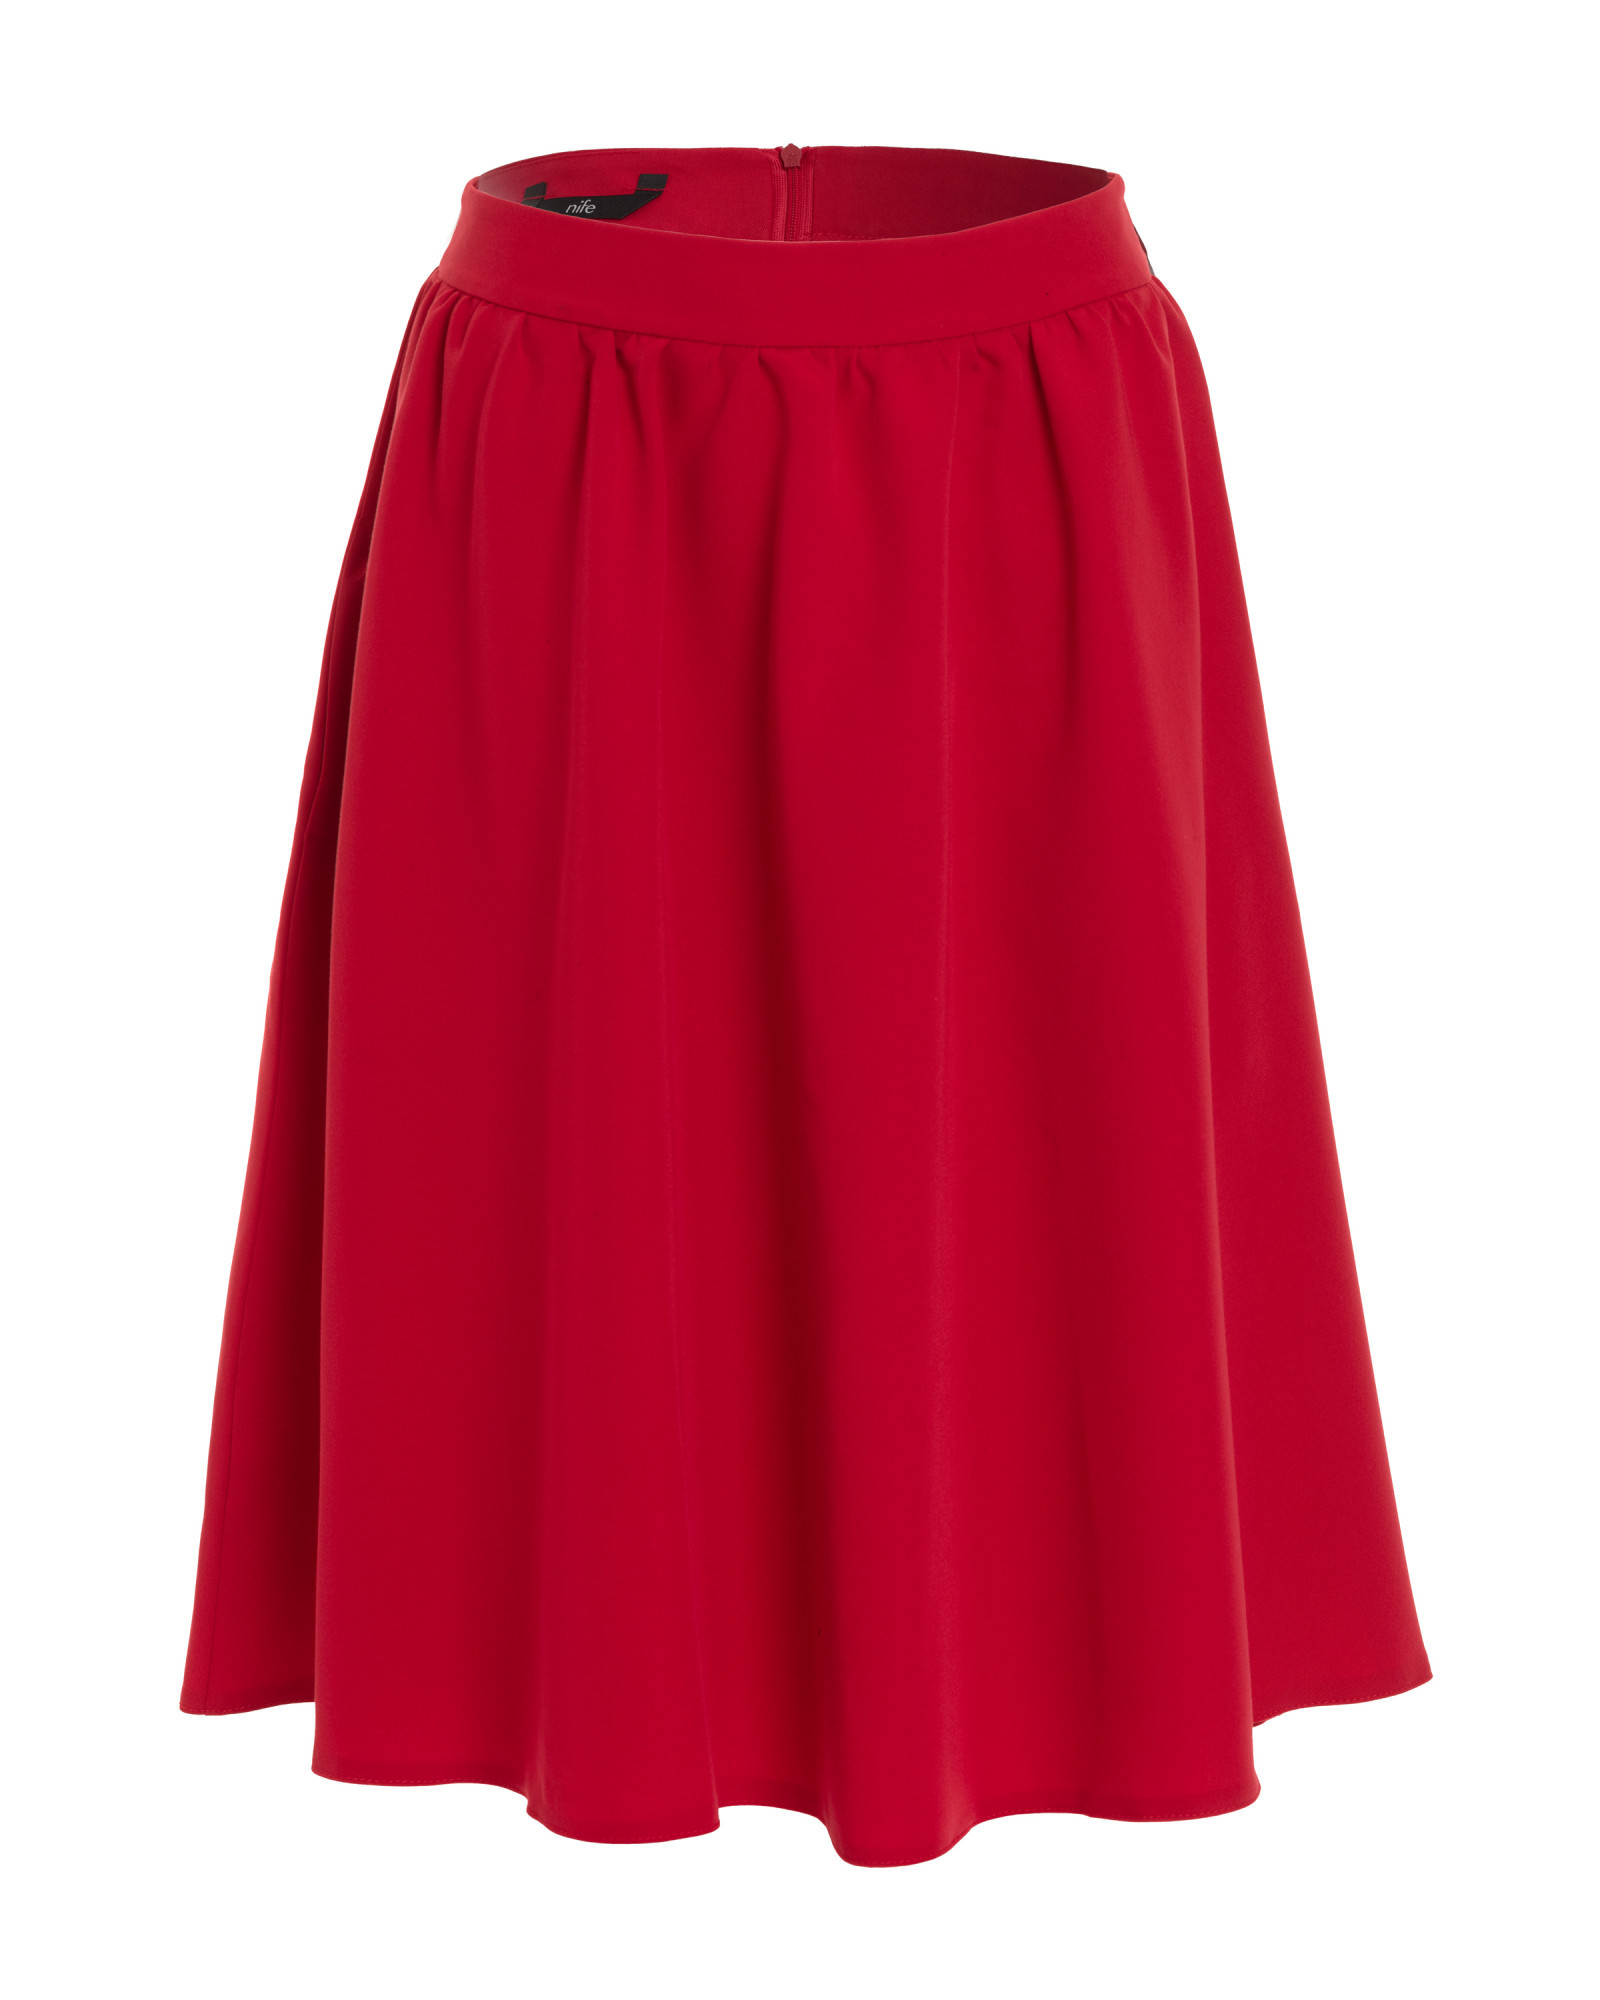 Dámská sukně model 18694735 Červená Nife červená 40 - NIKE